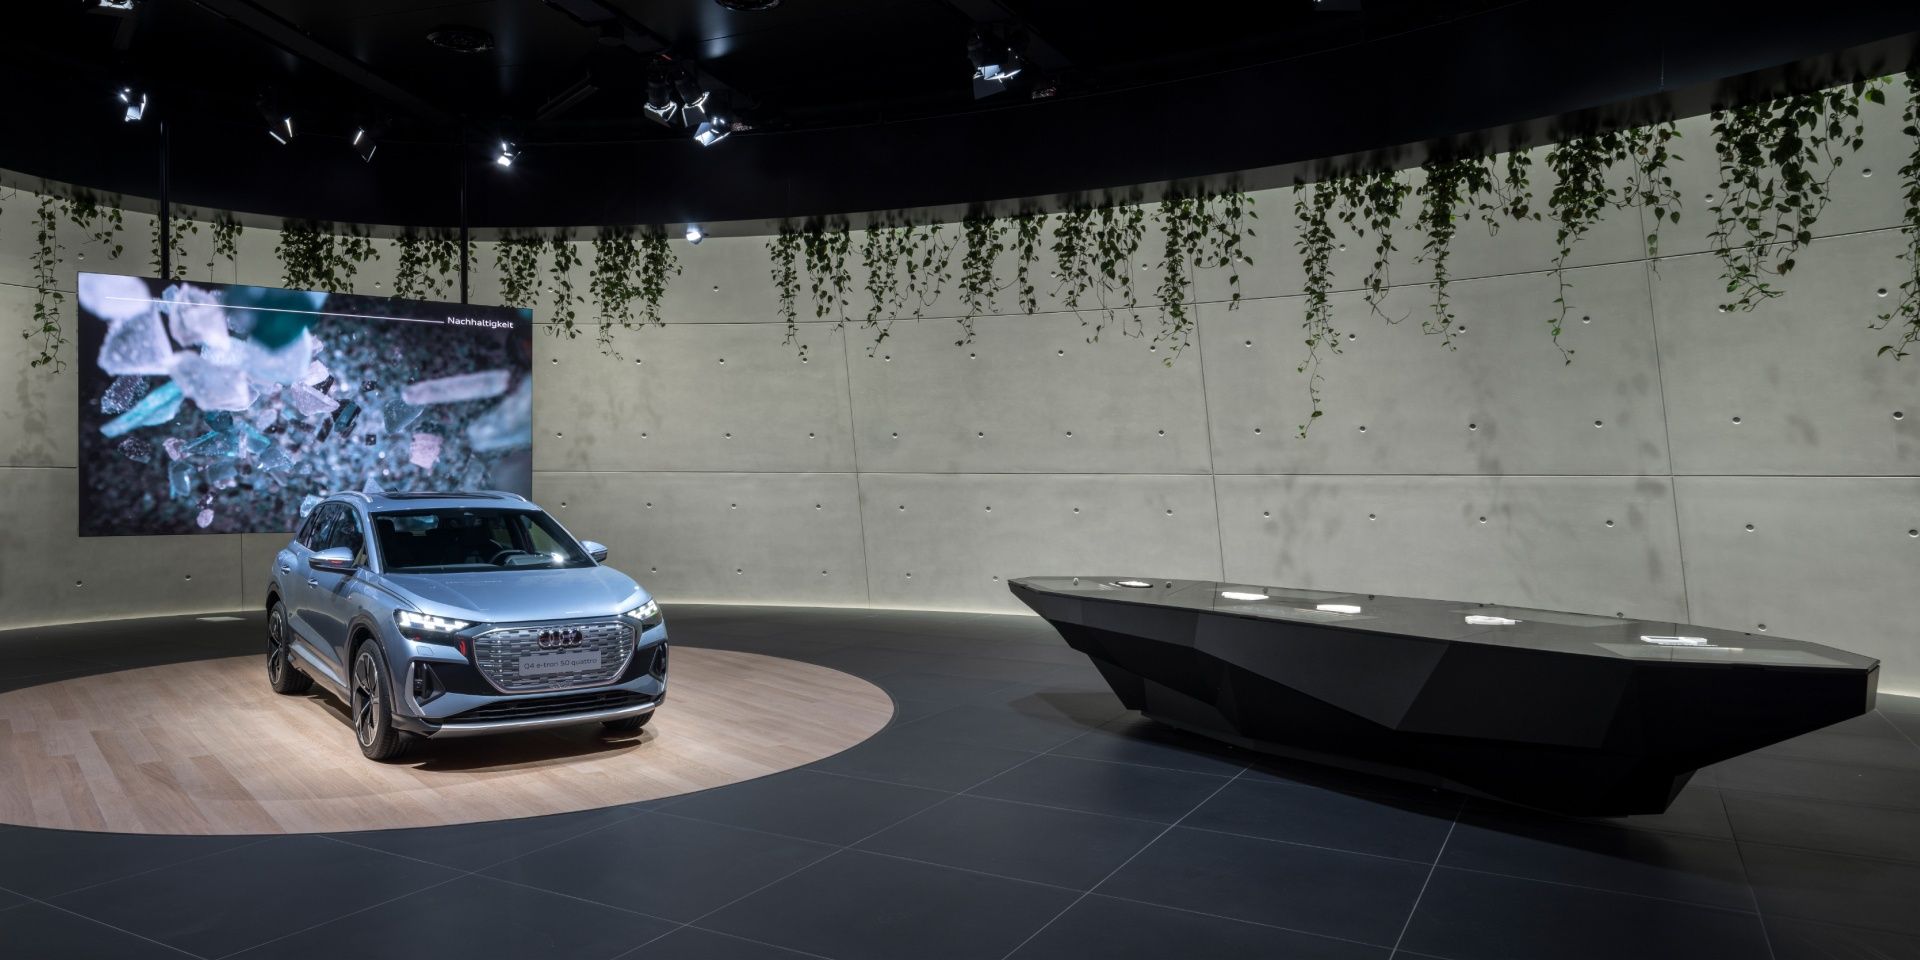 Si vedono Audi Q4 e-tron e una proiezione sul tema della sostenibilità. Lì accanto c'è il tavolo informativo.